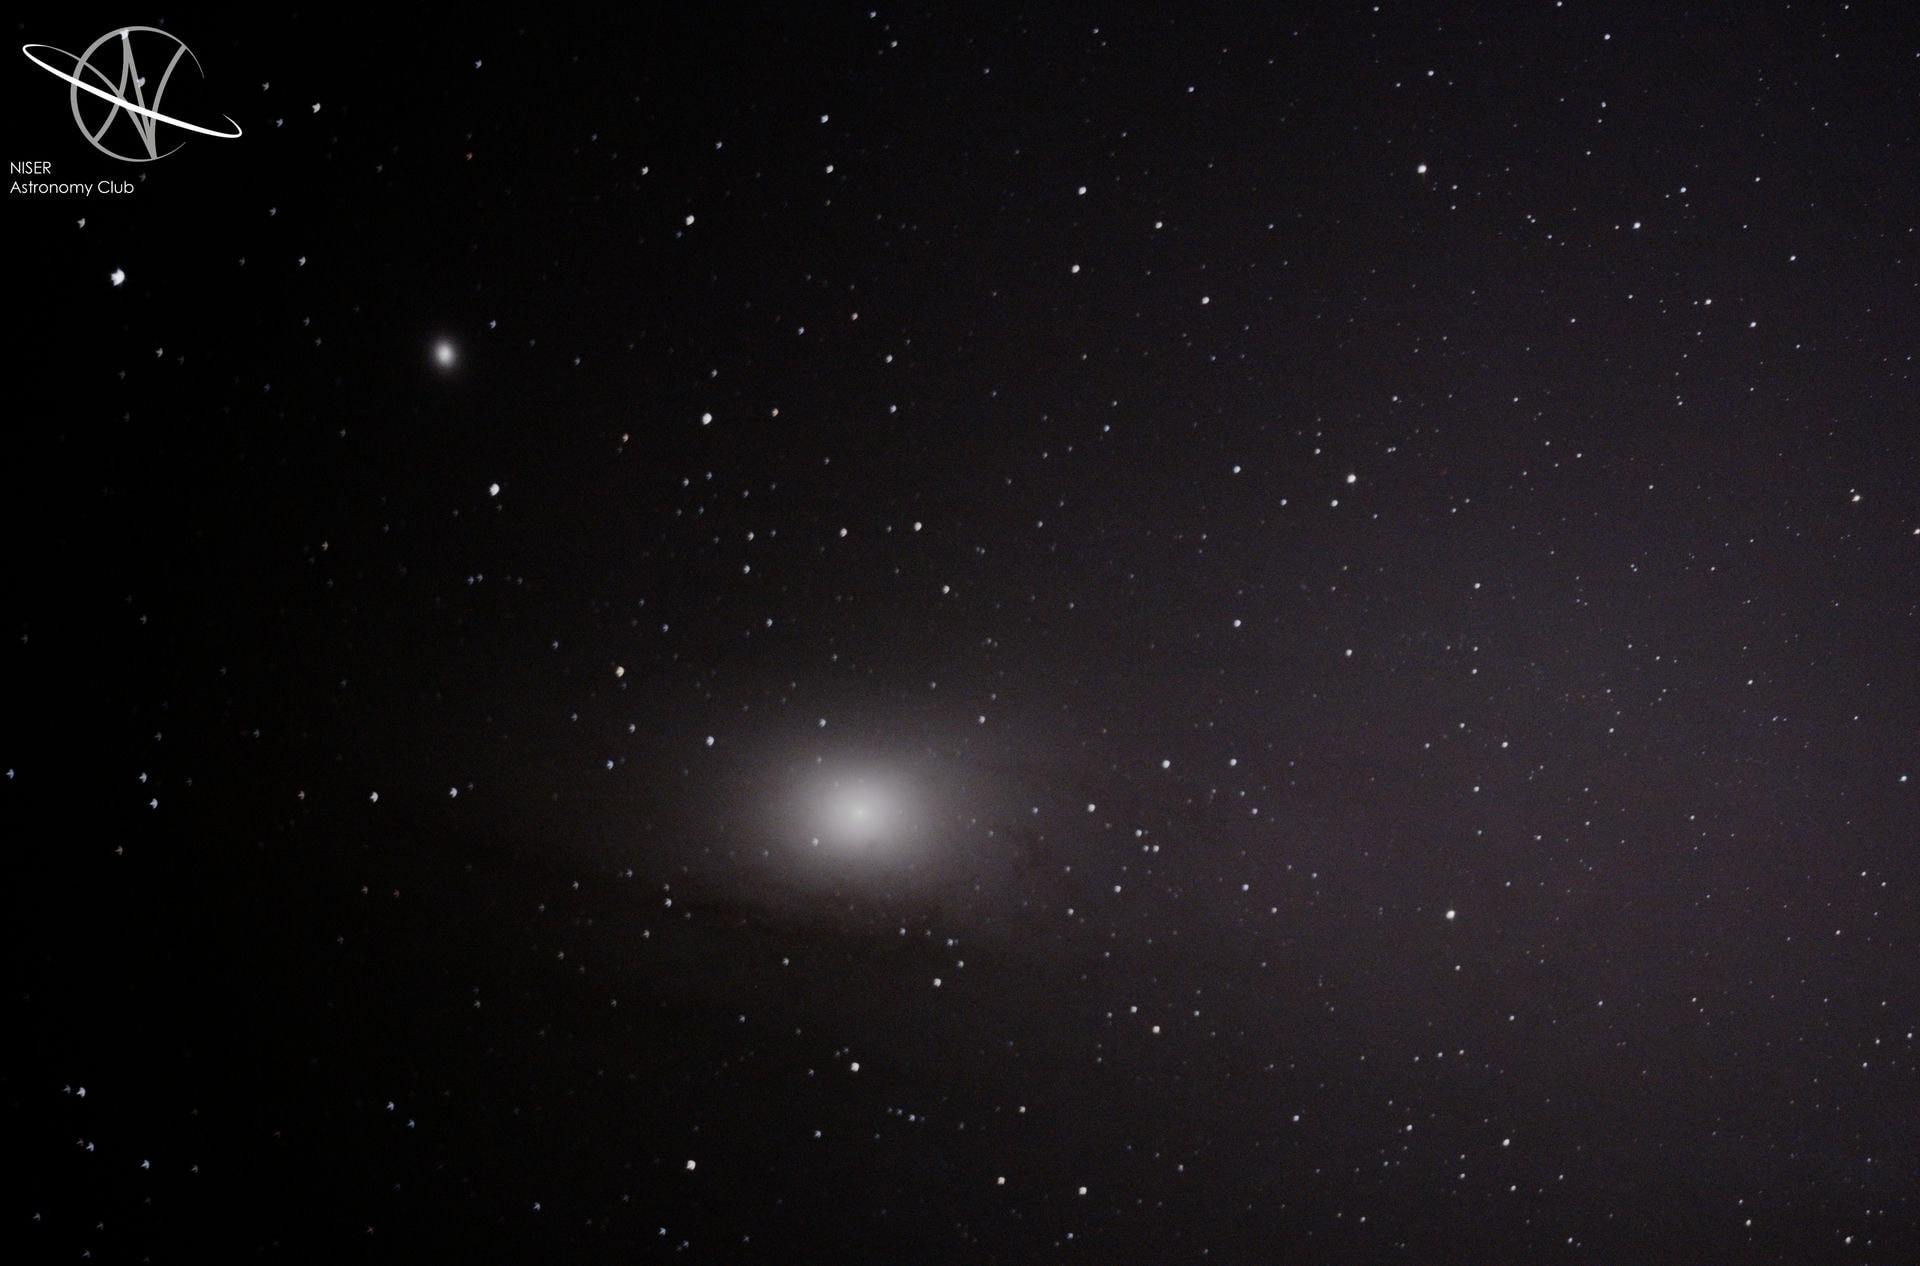 Messier 31 (Andromeda Galaxy)